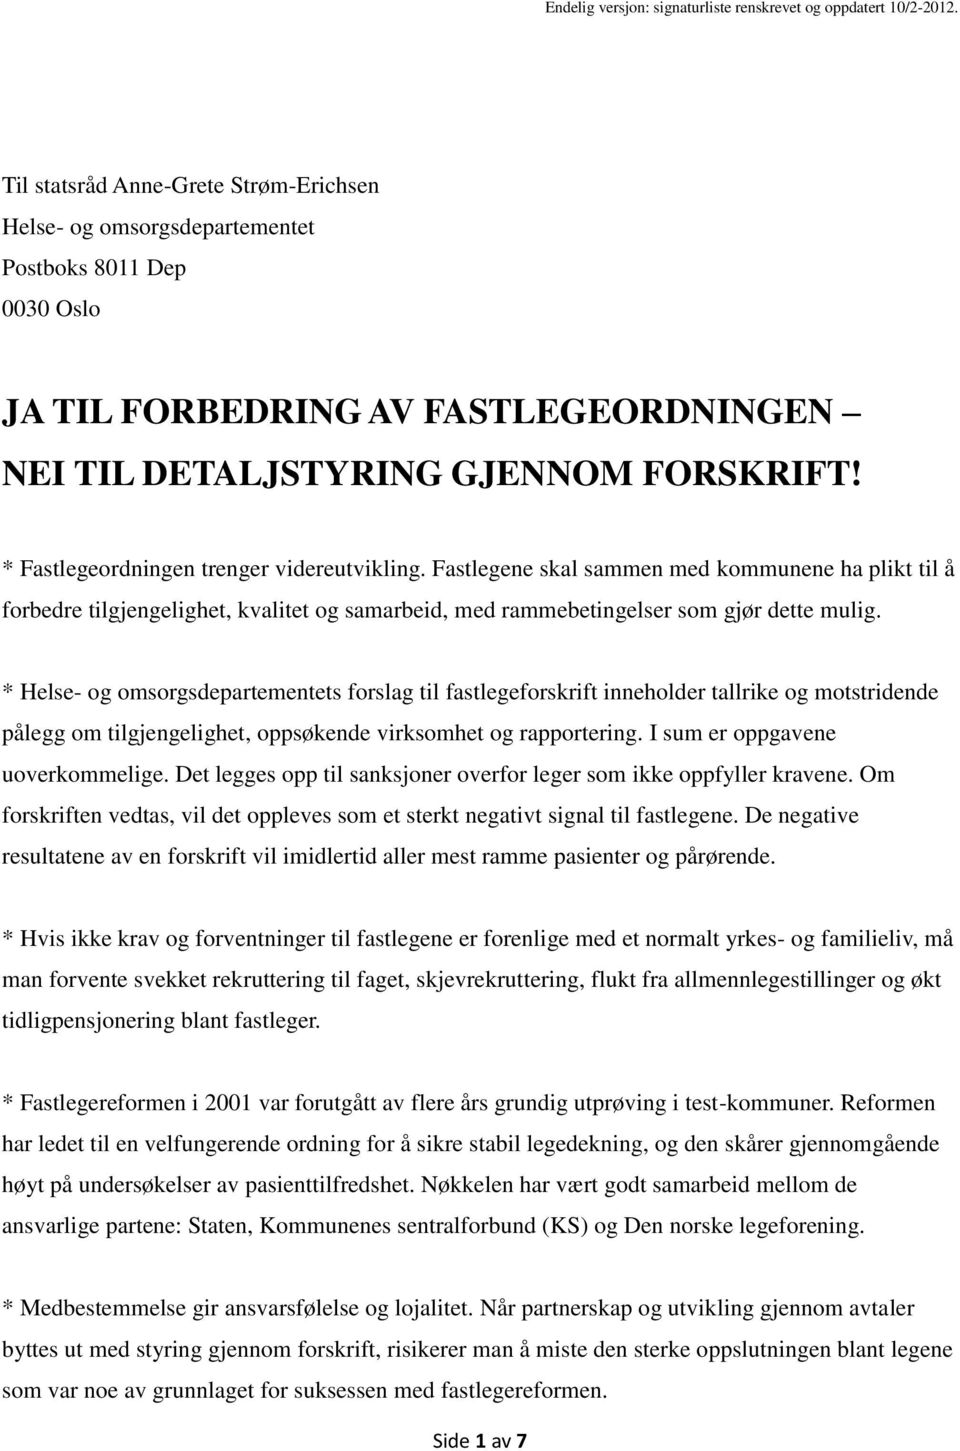 JA TIL FORBEDRING AV FASTLEGEORDNINGEN NEI TIL DETALJSTYRING GJENNOM  FORSKRIFT! - PDF Free Download